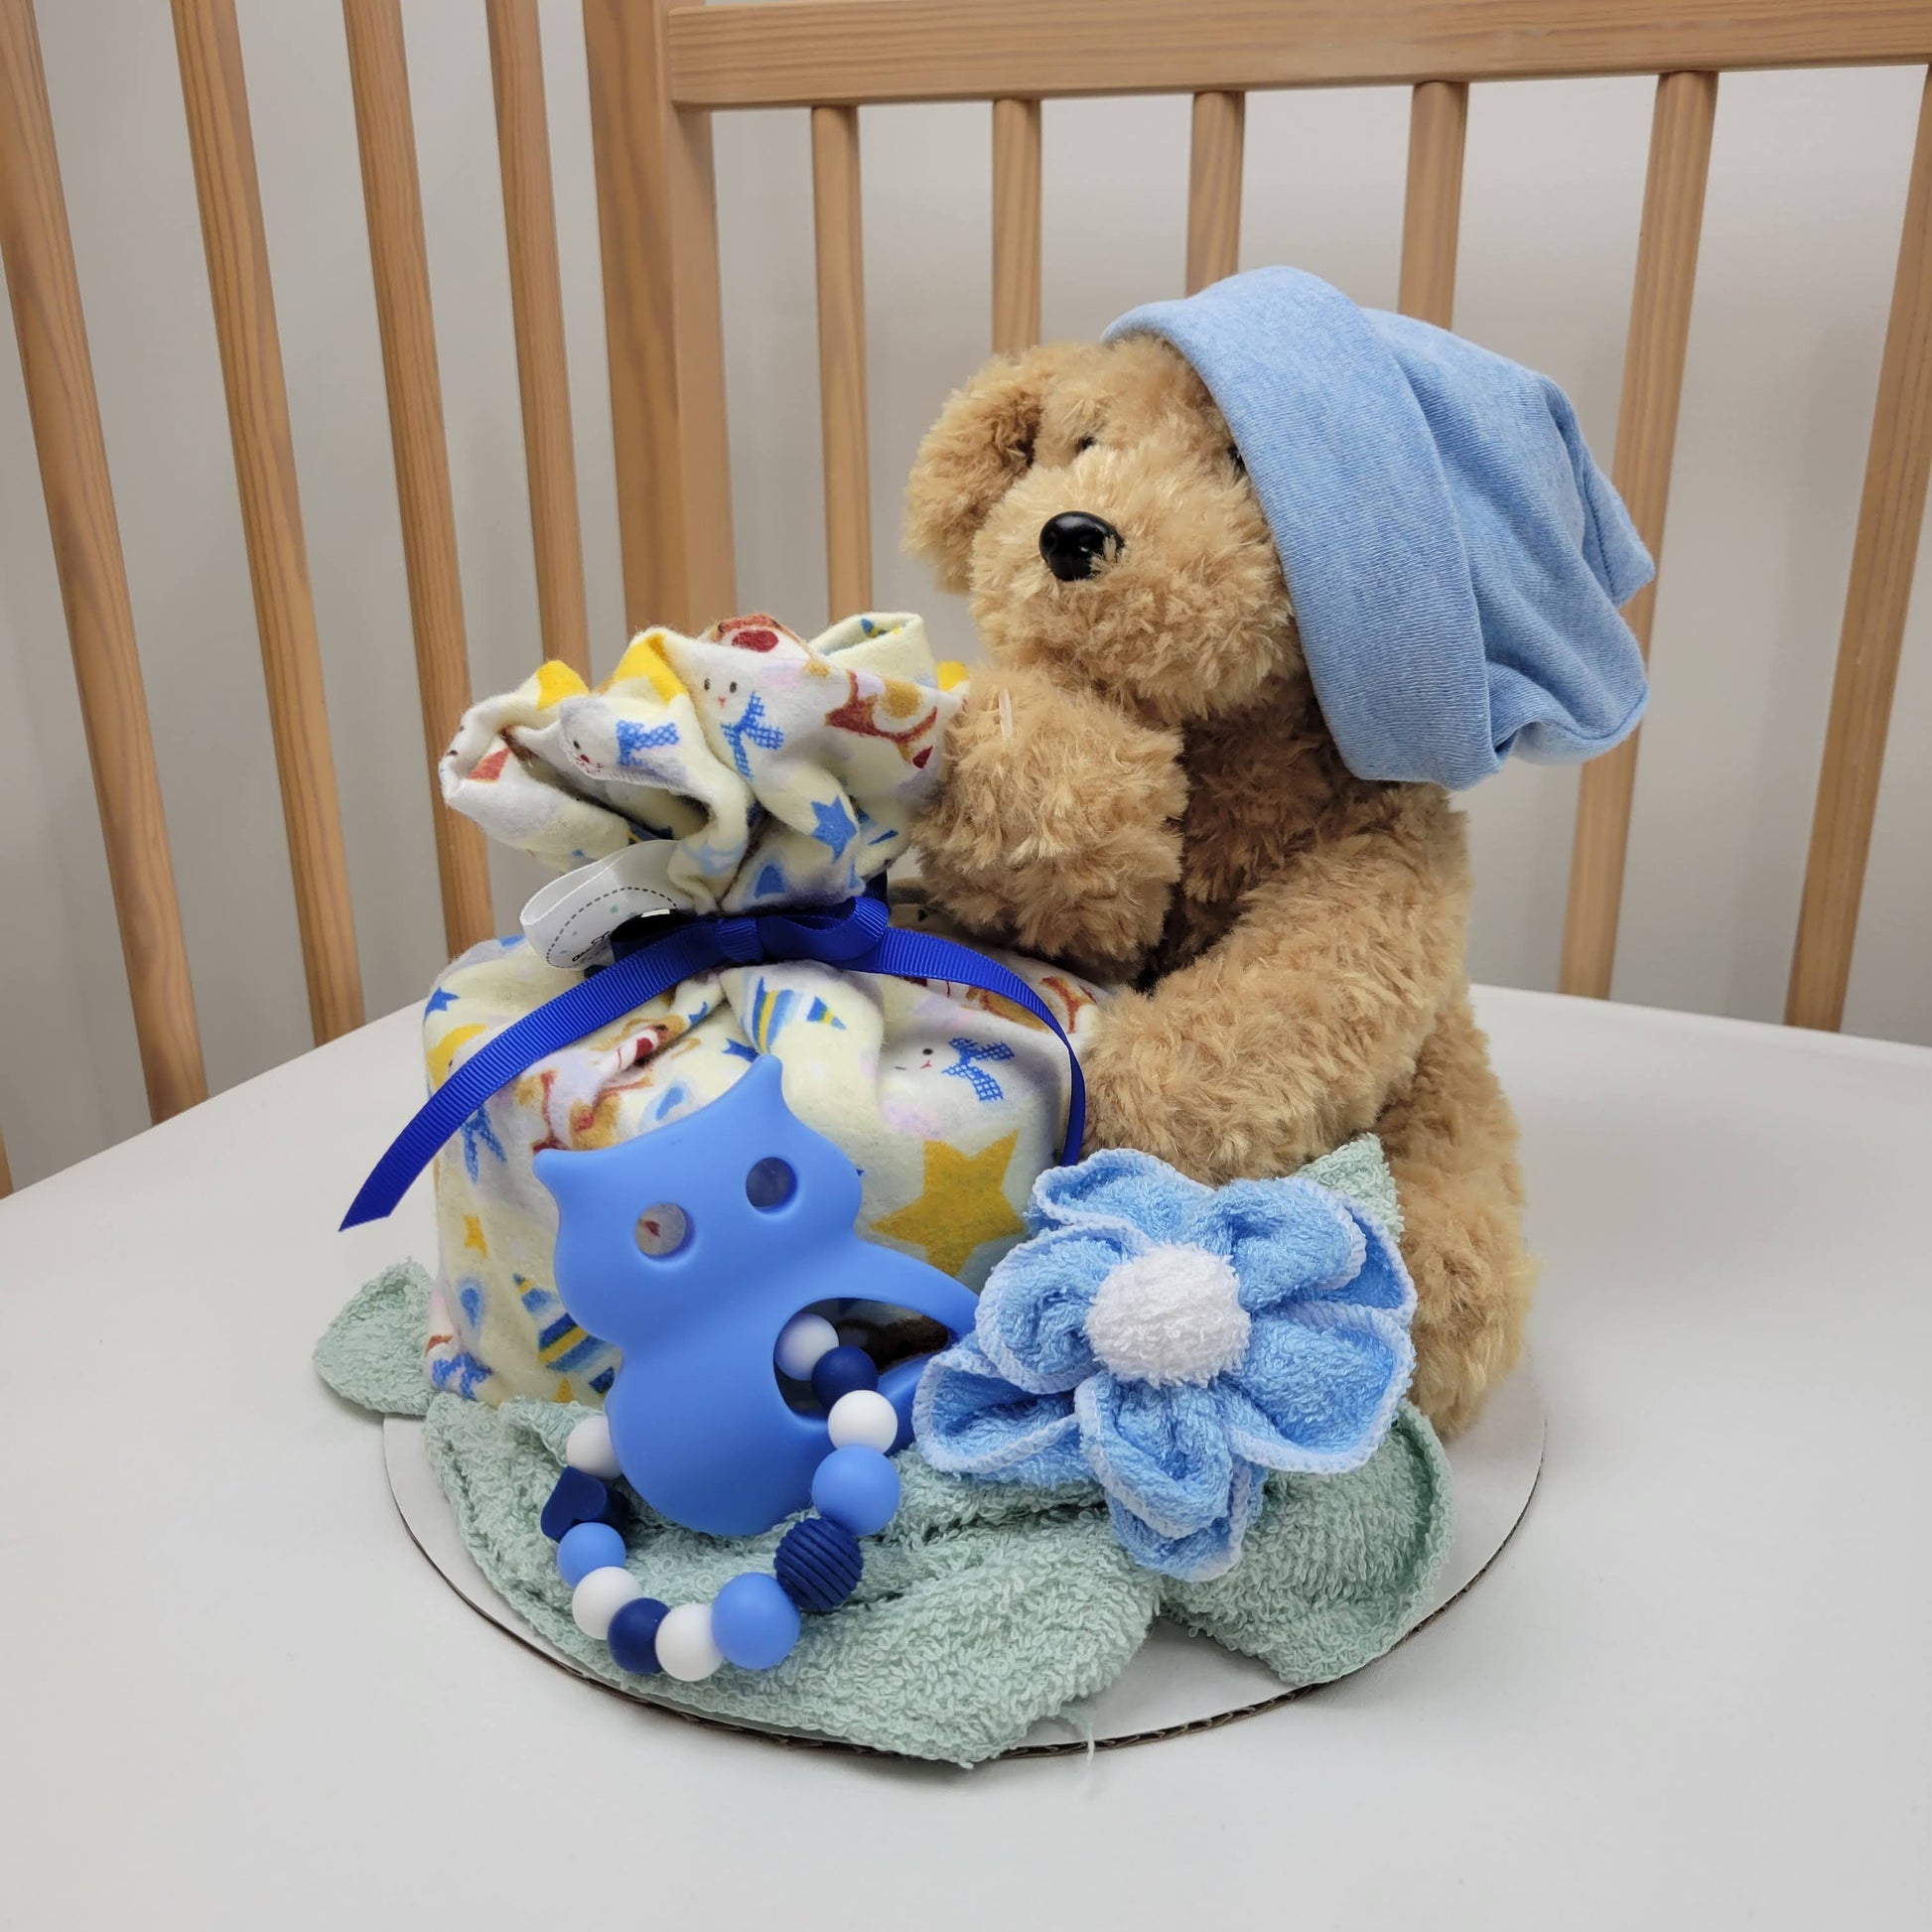 Ensemble cadeau pour babyshower pour bébé garçon. Contenant un  toutou chien beige, une couverture en flanelle jaune, un bonnet bleu, des débarbouillettes et un jouet de dentition avec un hibou bleu.